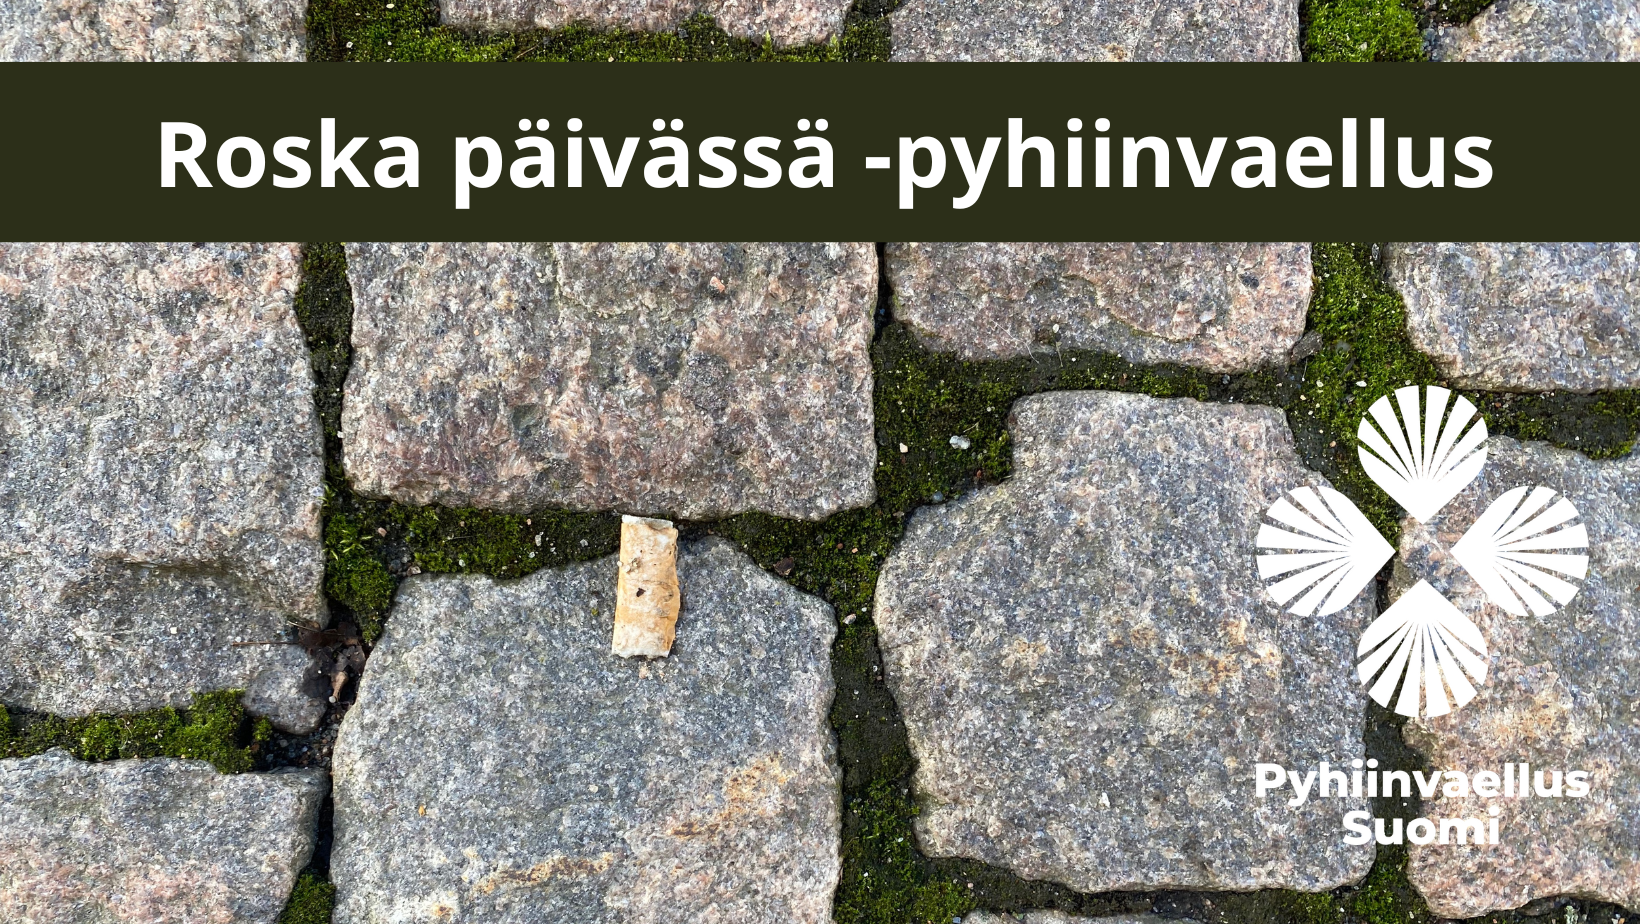 Roska päivässä -pyhiinvaellus featured image